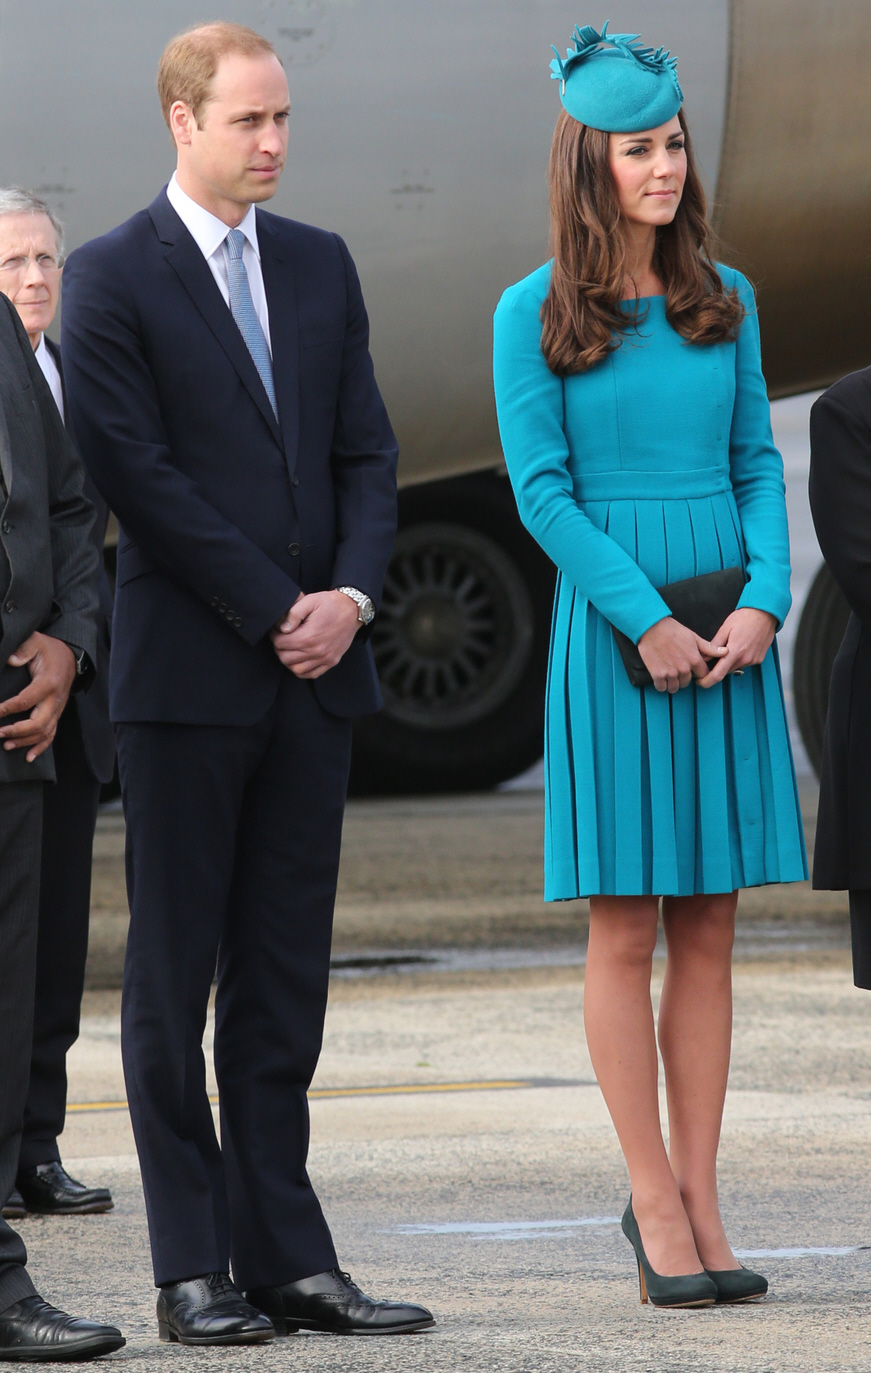 Герцогиня Кейт в Эмилии Викстед в Данидине, Новая Зеландия: красивая или слишком консервативная?